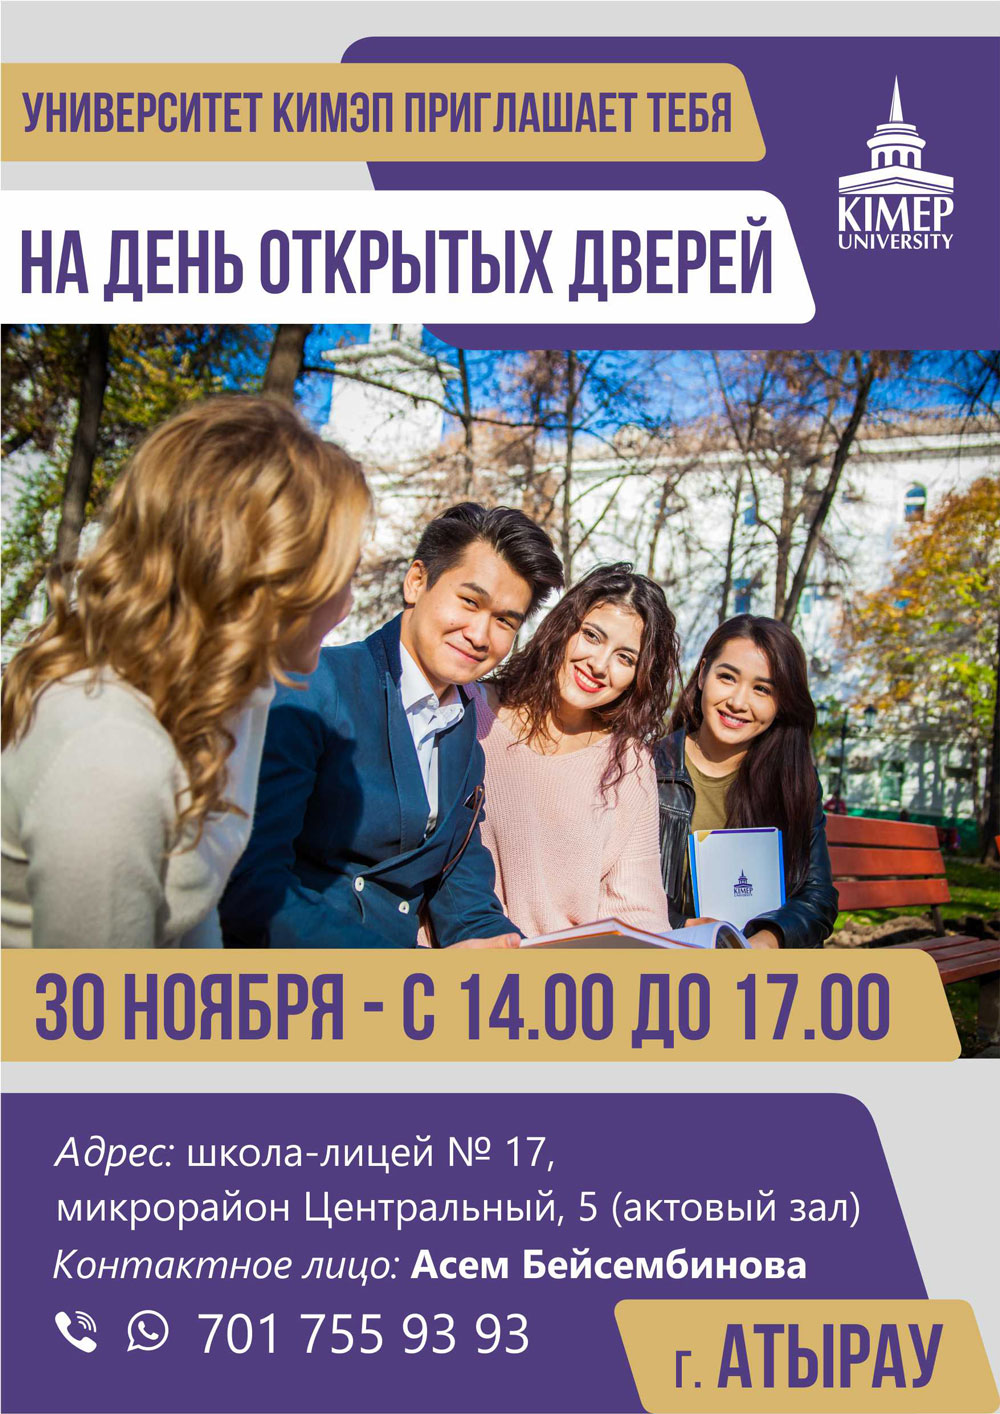 Invitation-OHD-Atyrau-rus